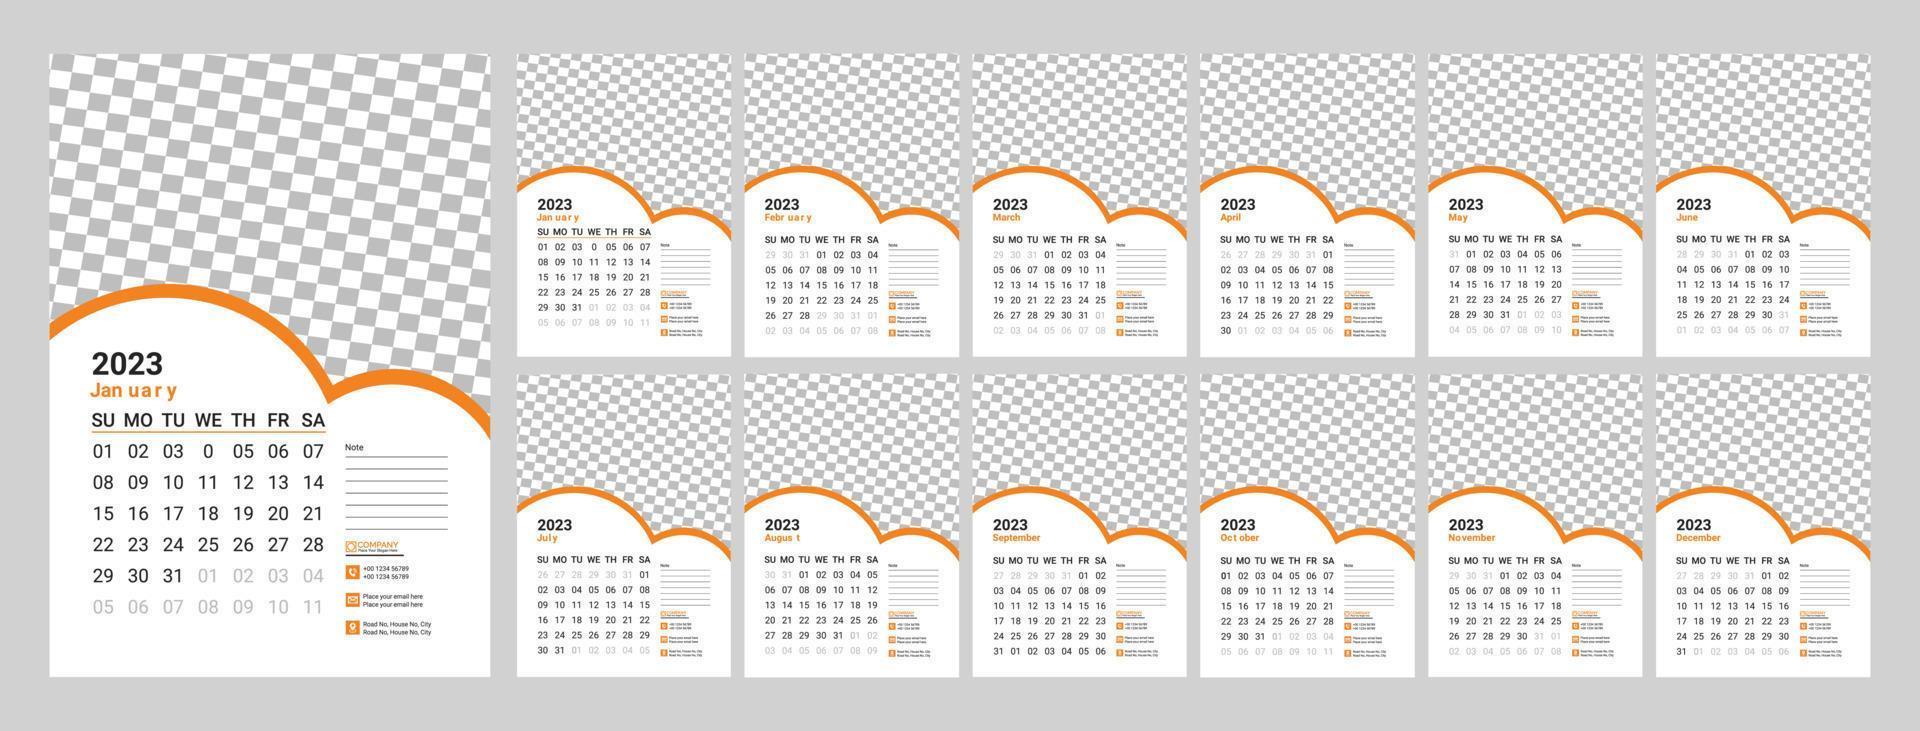 Wandkalender Design 2023. Monatskalender 2023. 12 Monate. bearbeitbare Kalenderseitenvorlage vektor